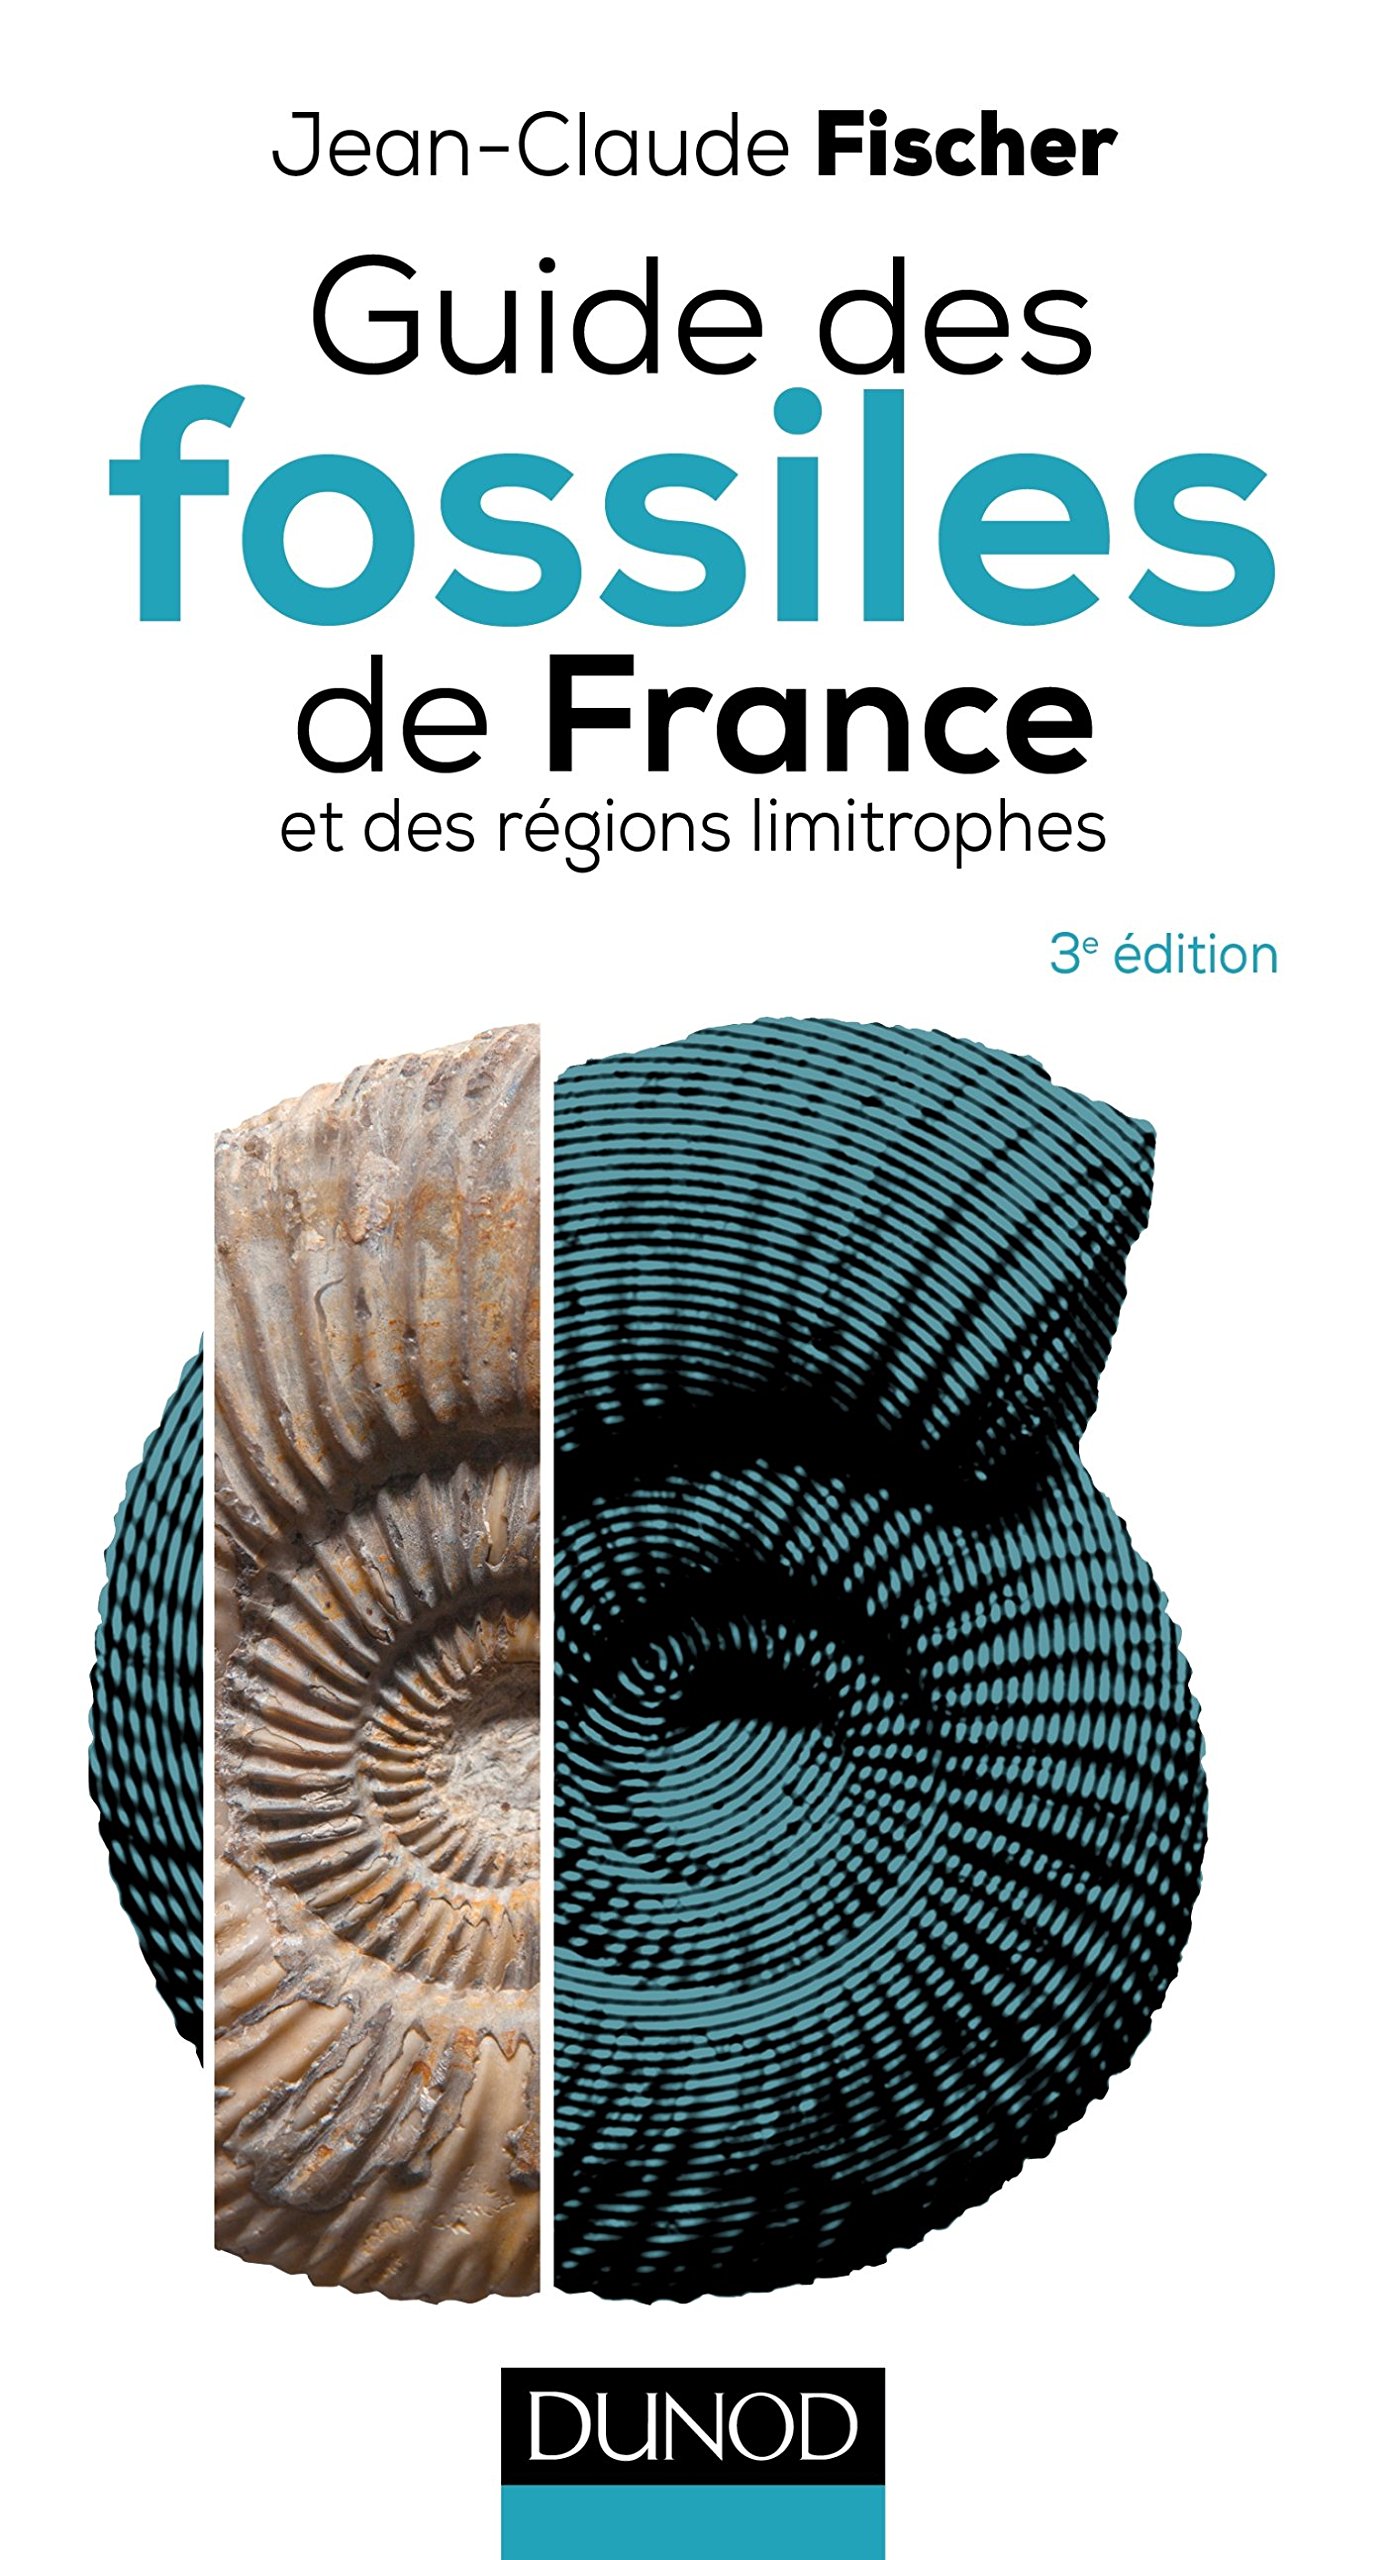 ÉPUISÉ - Guide des fossiles de France et des régions limitrophes, 2016, 2e éd., 488 p.